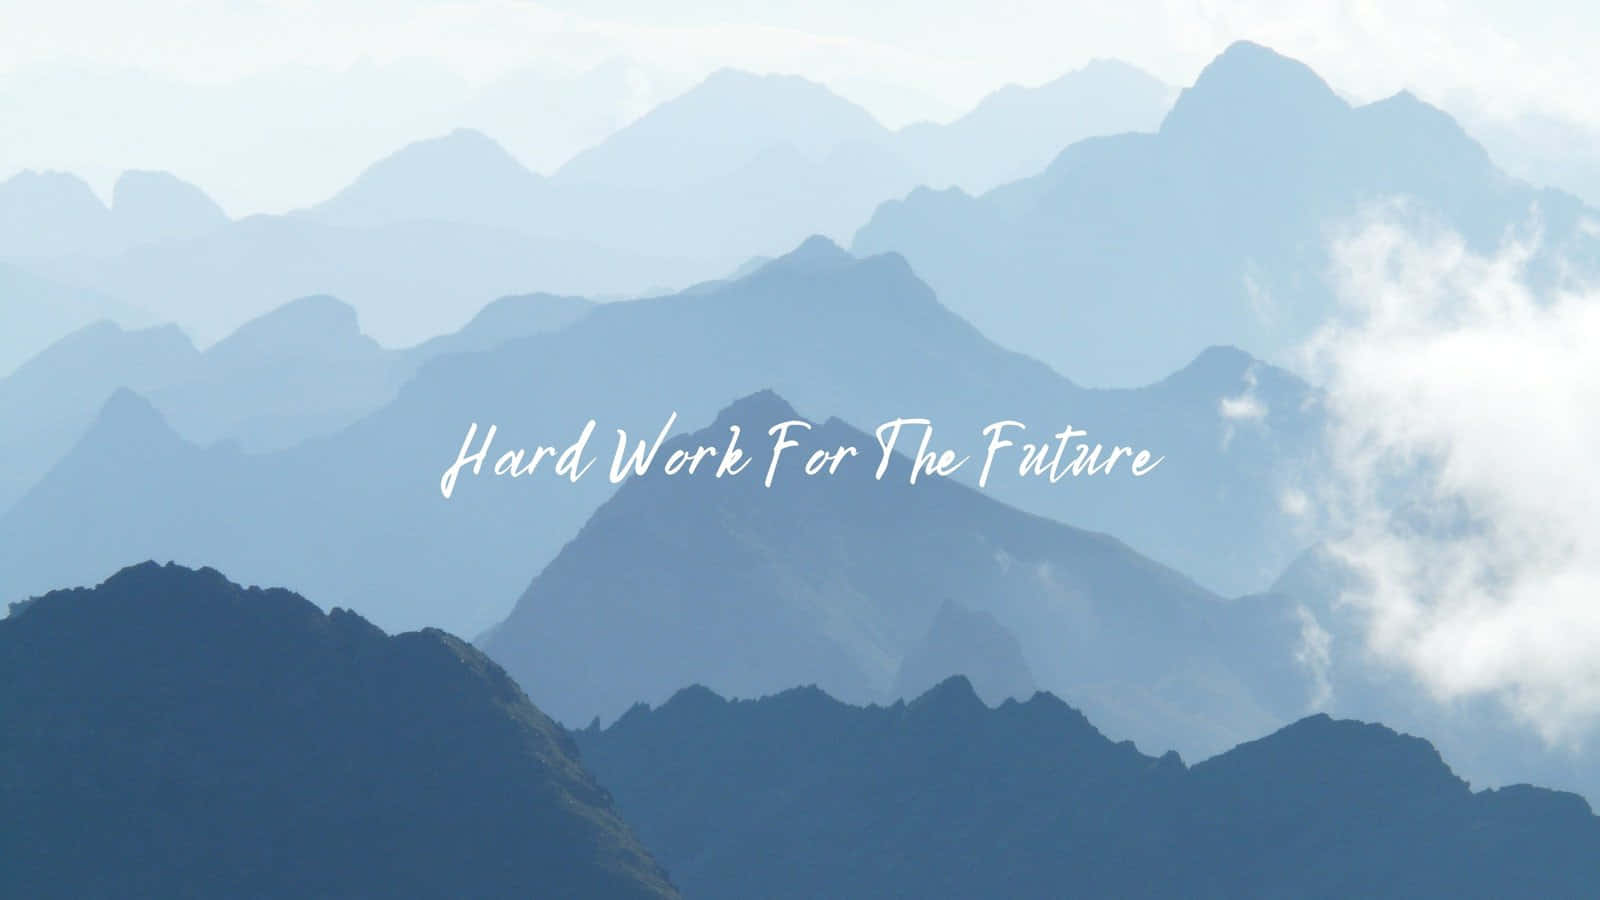 Bildmit Zitat Über Harte Arbeit Für Die Zukunft